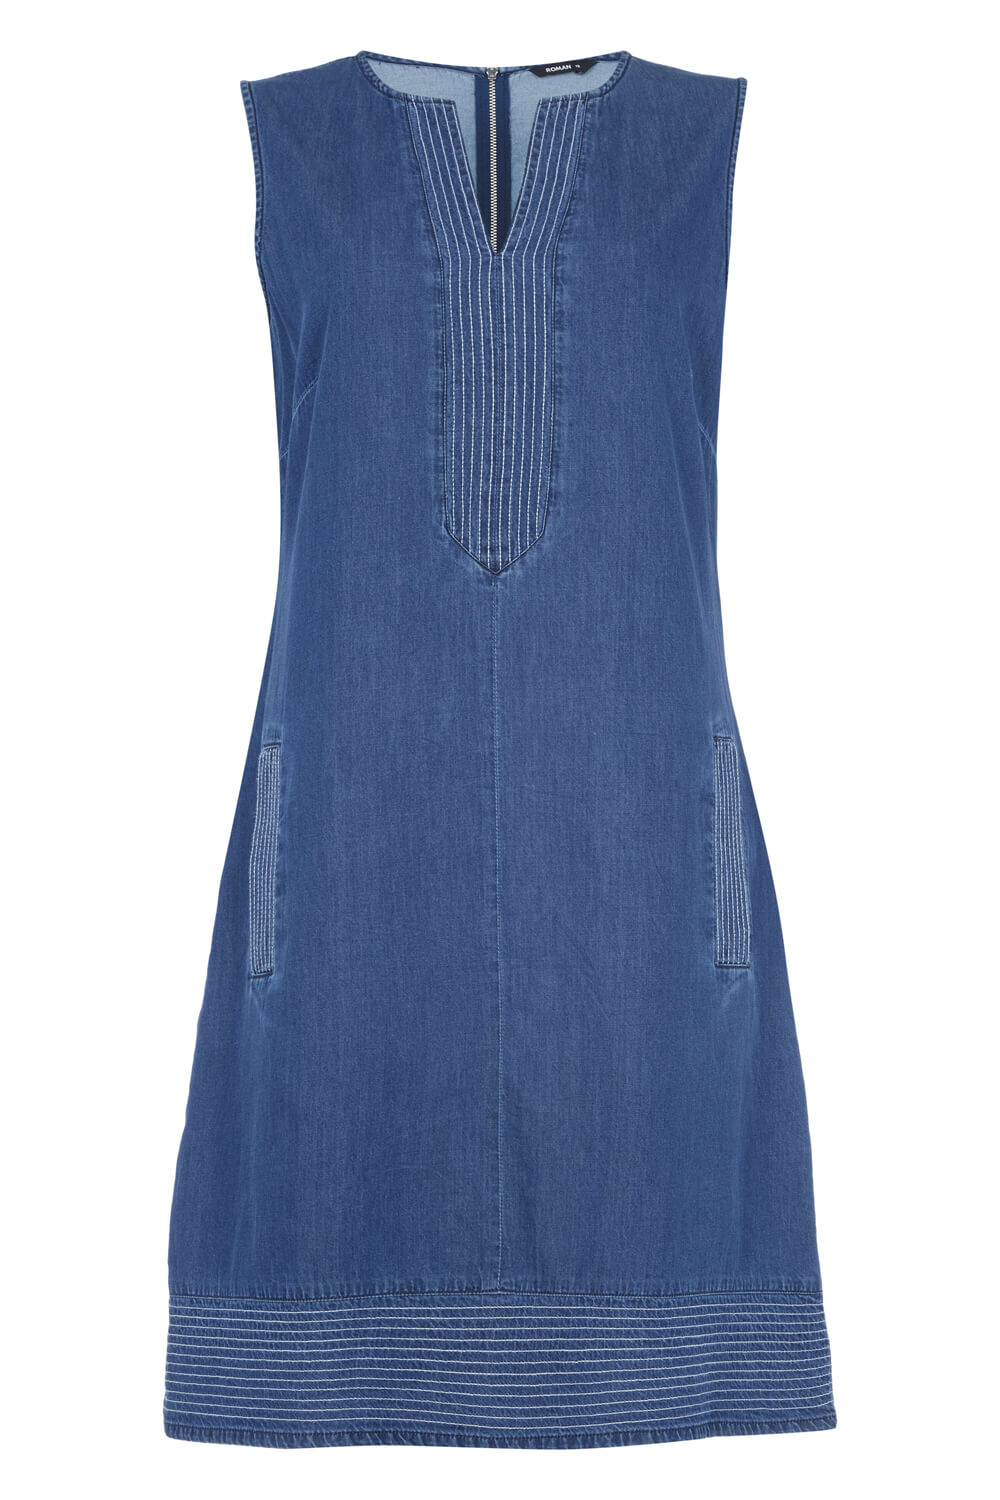 Blue V-Neck Denim Shift Dress, Image 3 of 3